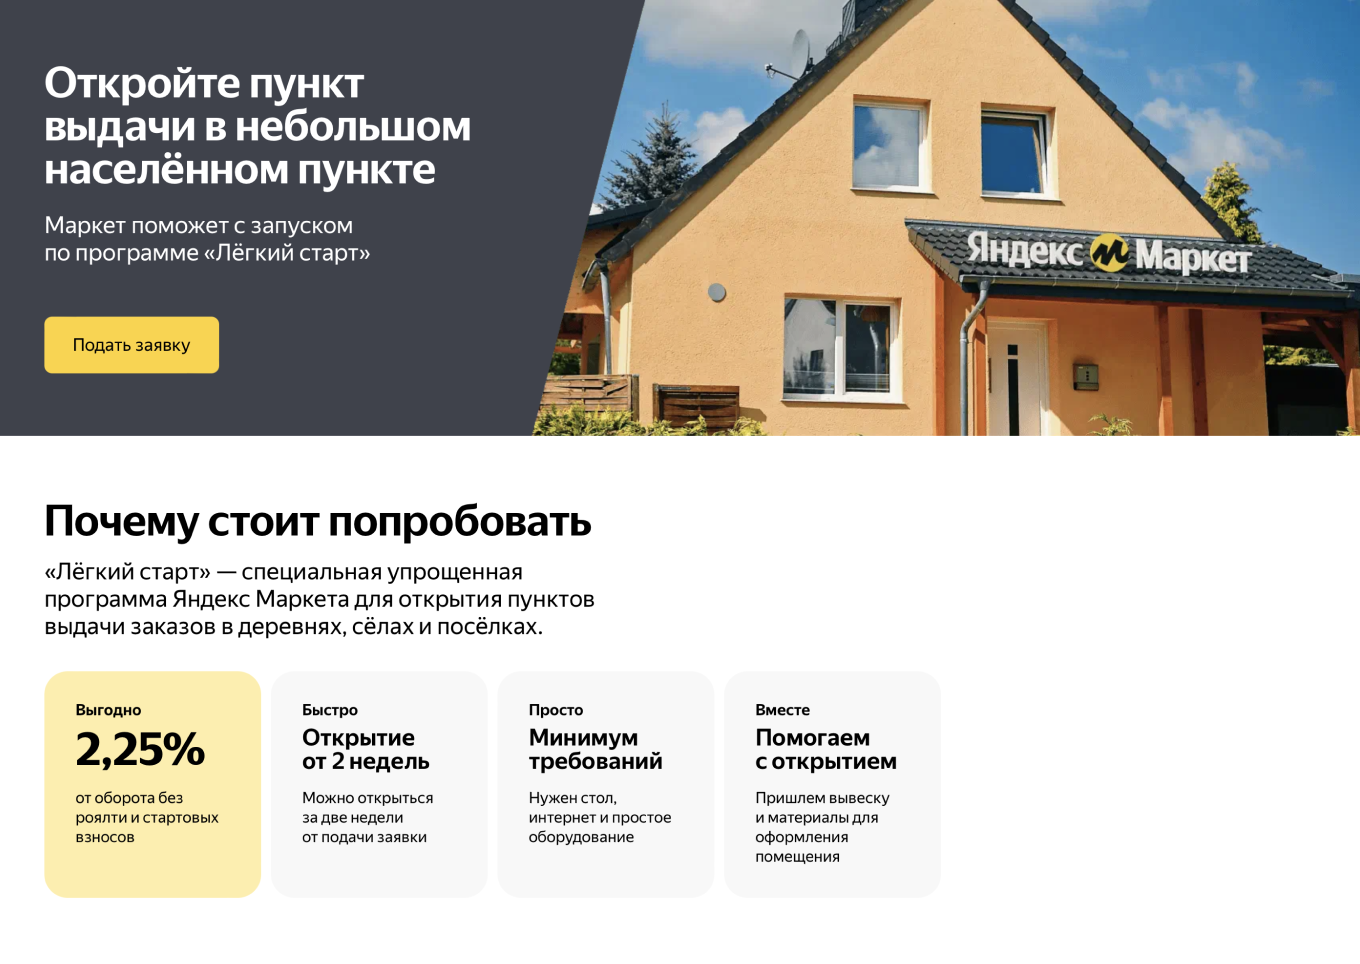 Условия работы ПВЗ Яндекс Маркета в деревне